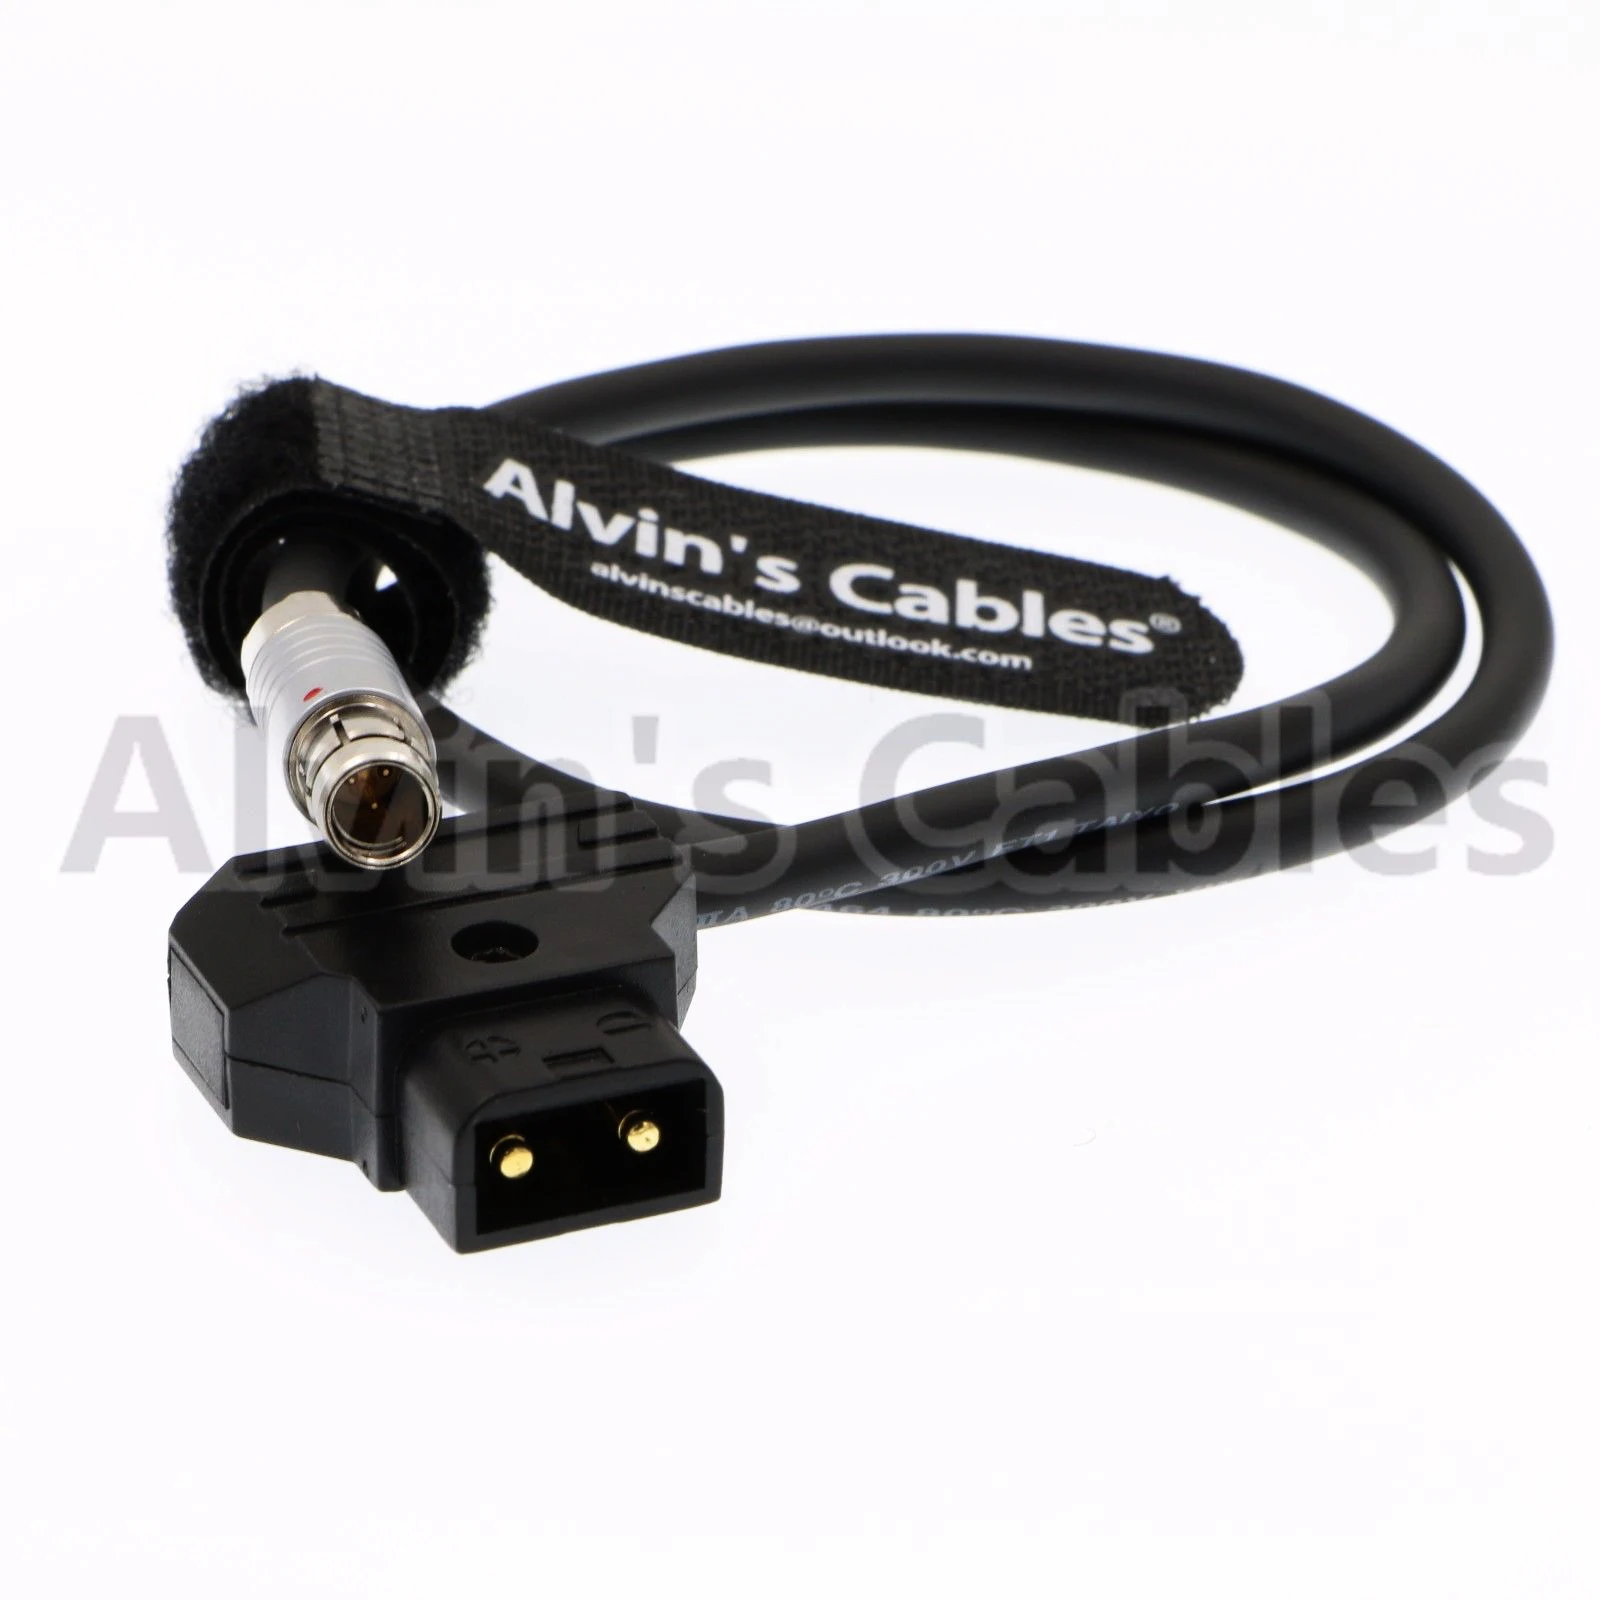 Кабели Элвина 3 pin RS штекер к Anton Bauer D-TAP кабель питания для ARRI Alexa RED Tilta